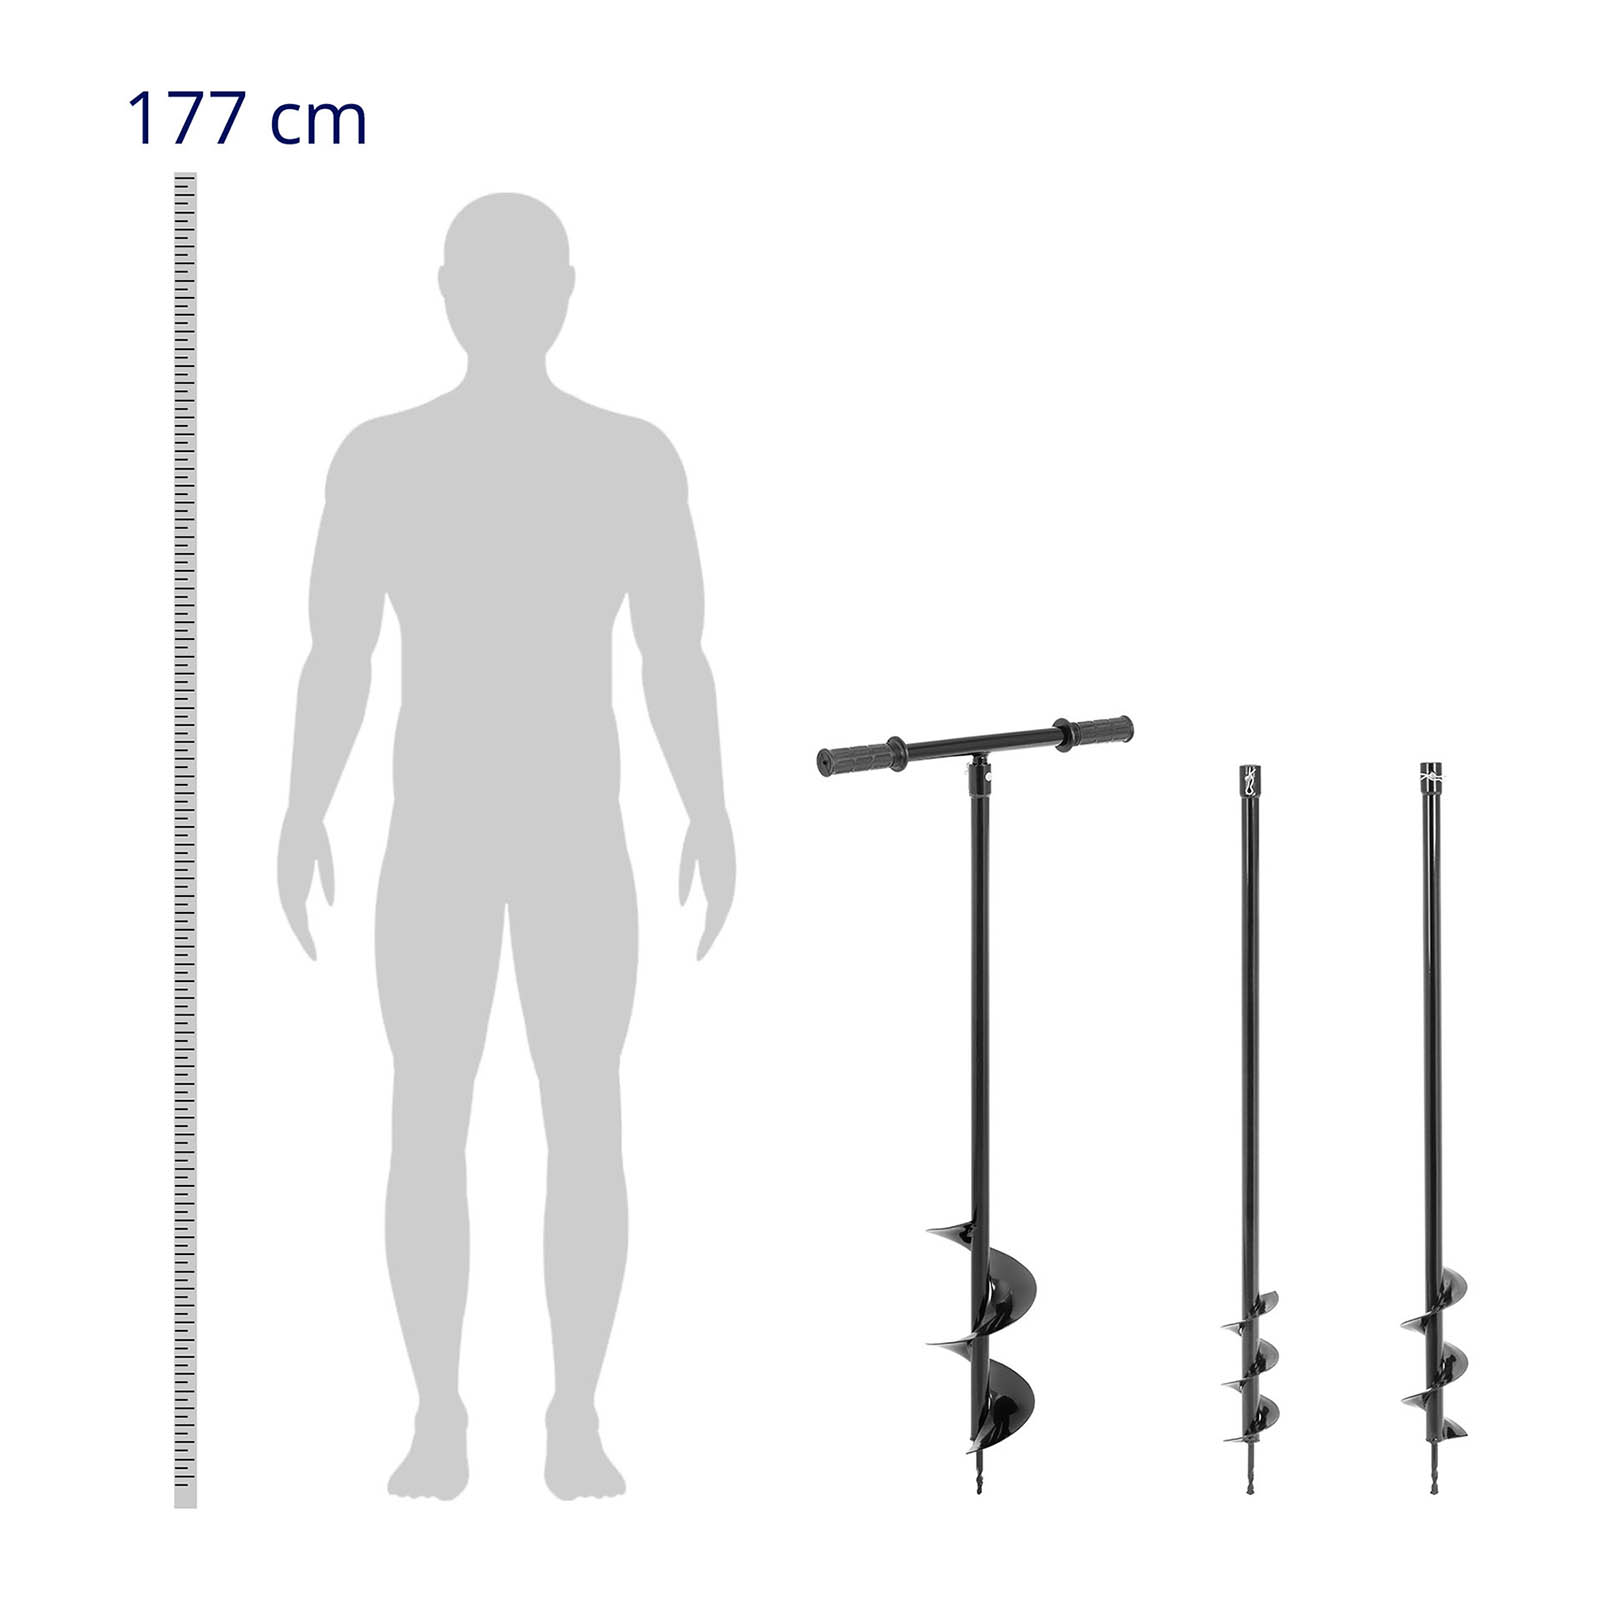 Handerdbohrer 100 cm - mit drei Bohrern: Ø 80, 100, 150 mm